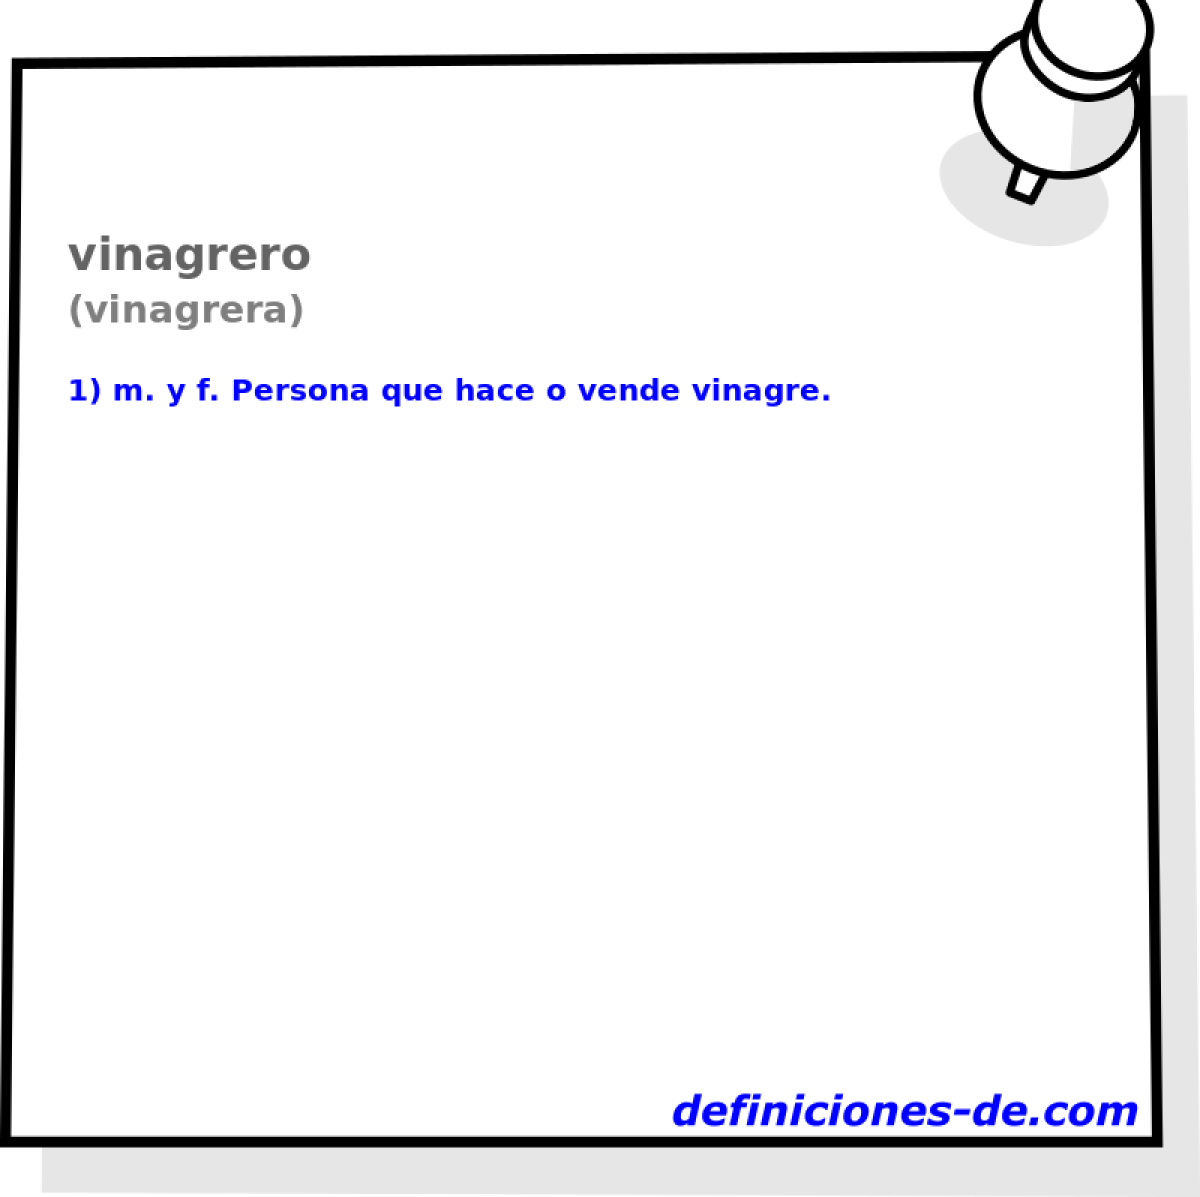 vinagrero (vinagrera)